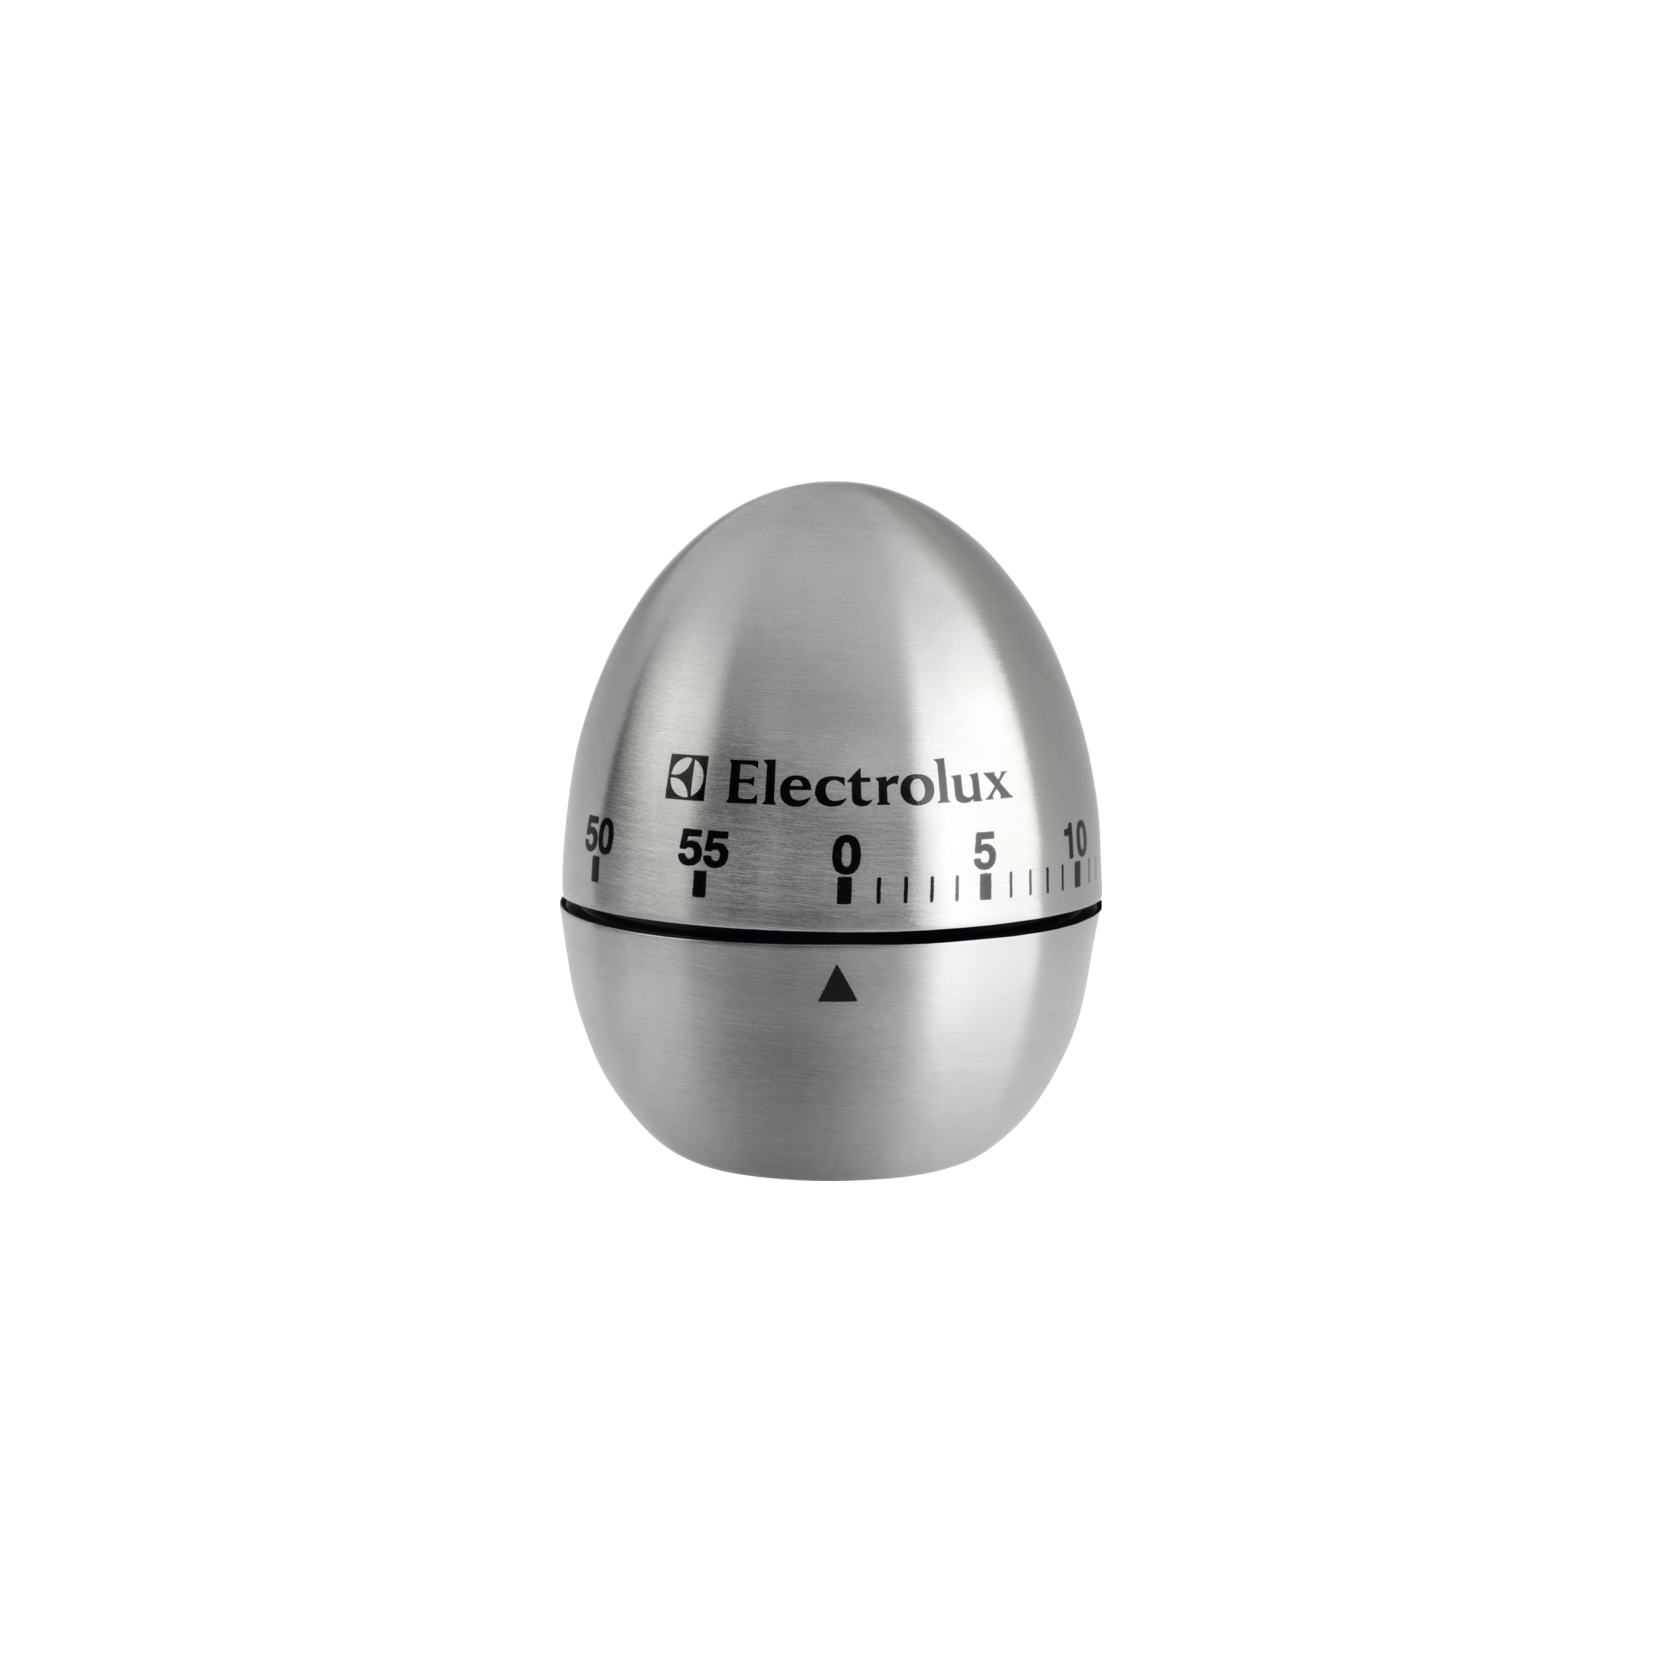 ELECTROLUX E4KTAT01 TIMER DA CUCINA MECCANICO MASSIMO 60 MIN IN ACCIAIO  INOX - PROMO